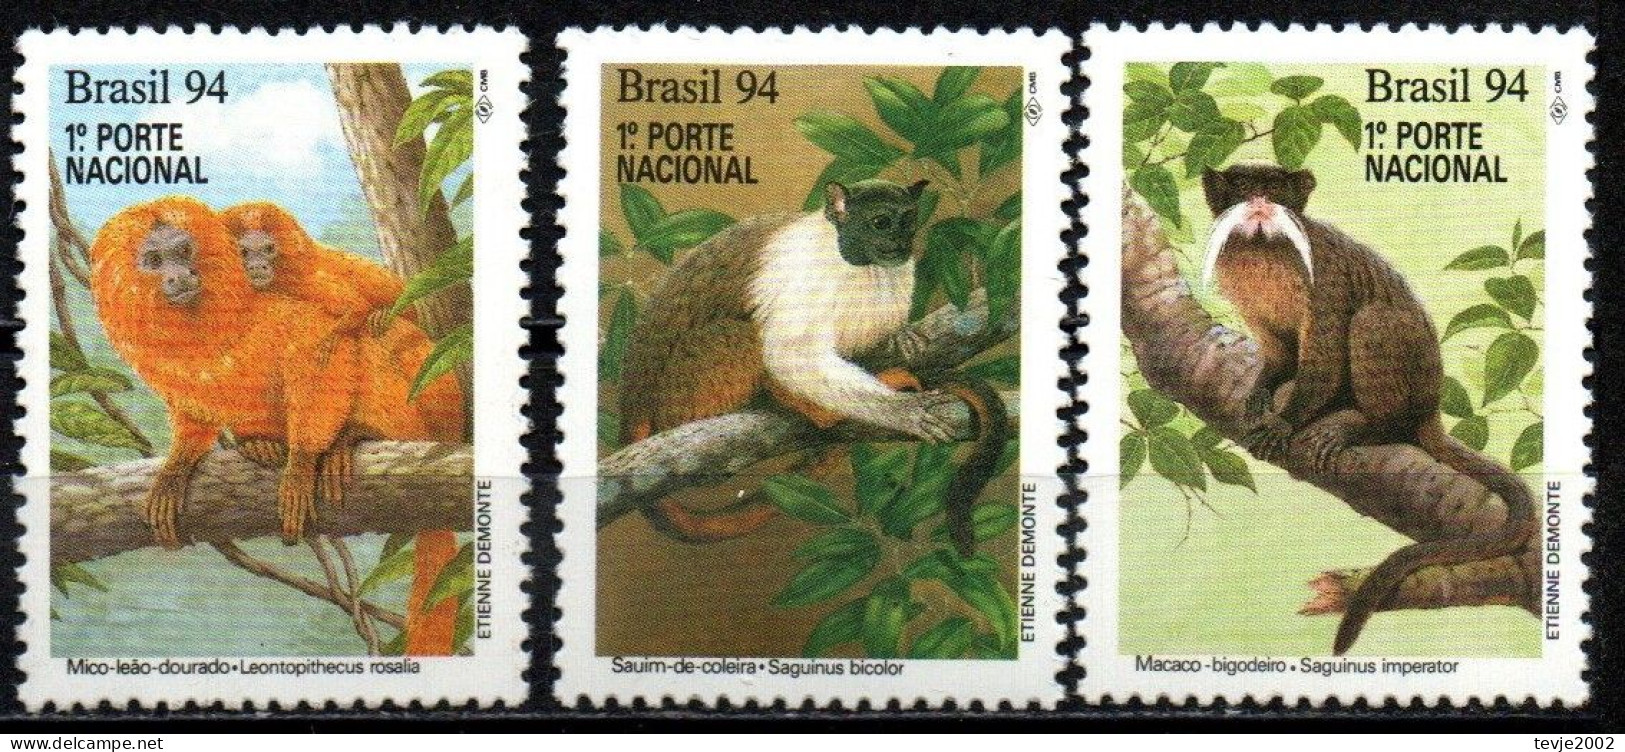 Brasilien 1994 - Mi.Nr. 2589 - 2591 - Postfrisch MNH - Tiere Animals Affen Monkeys - Singes